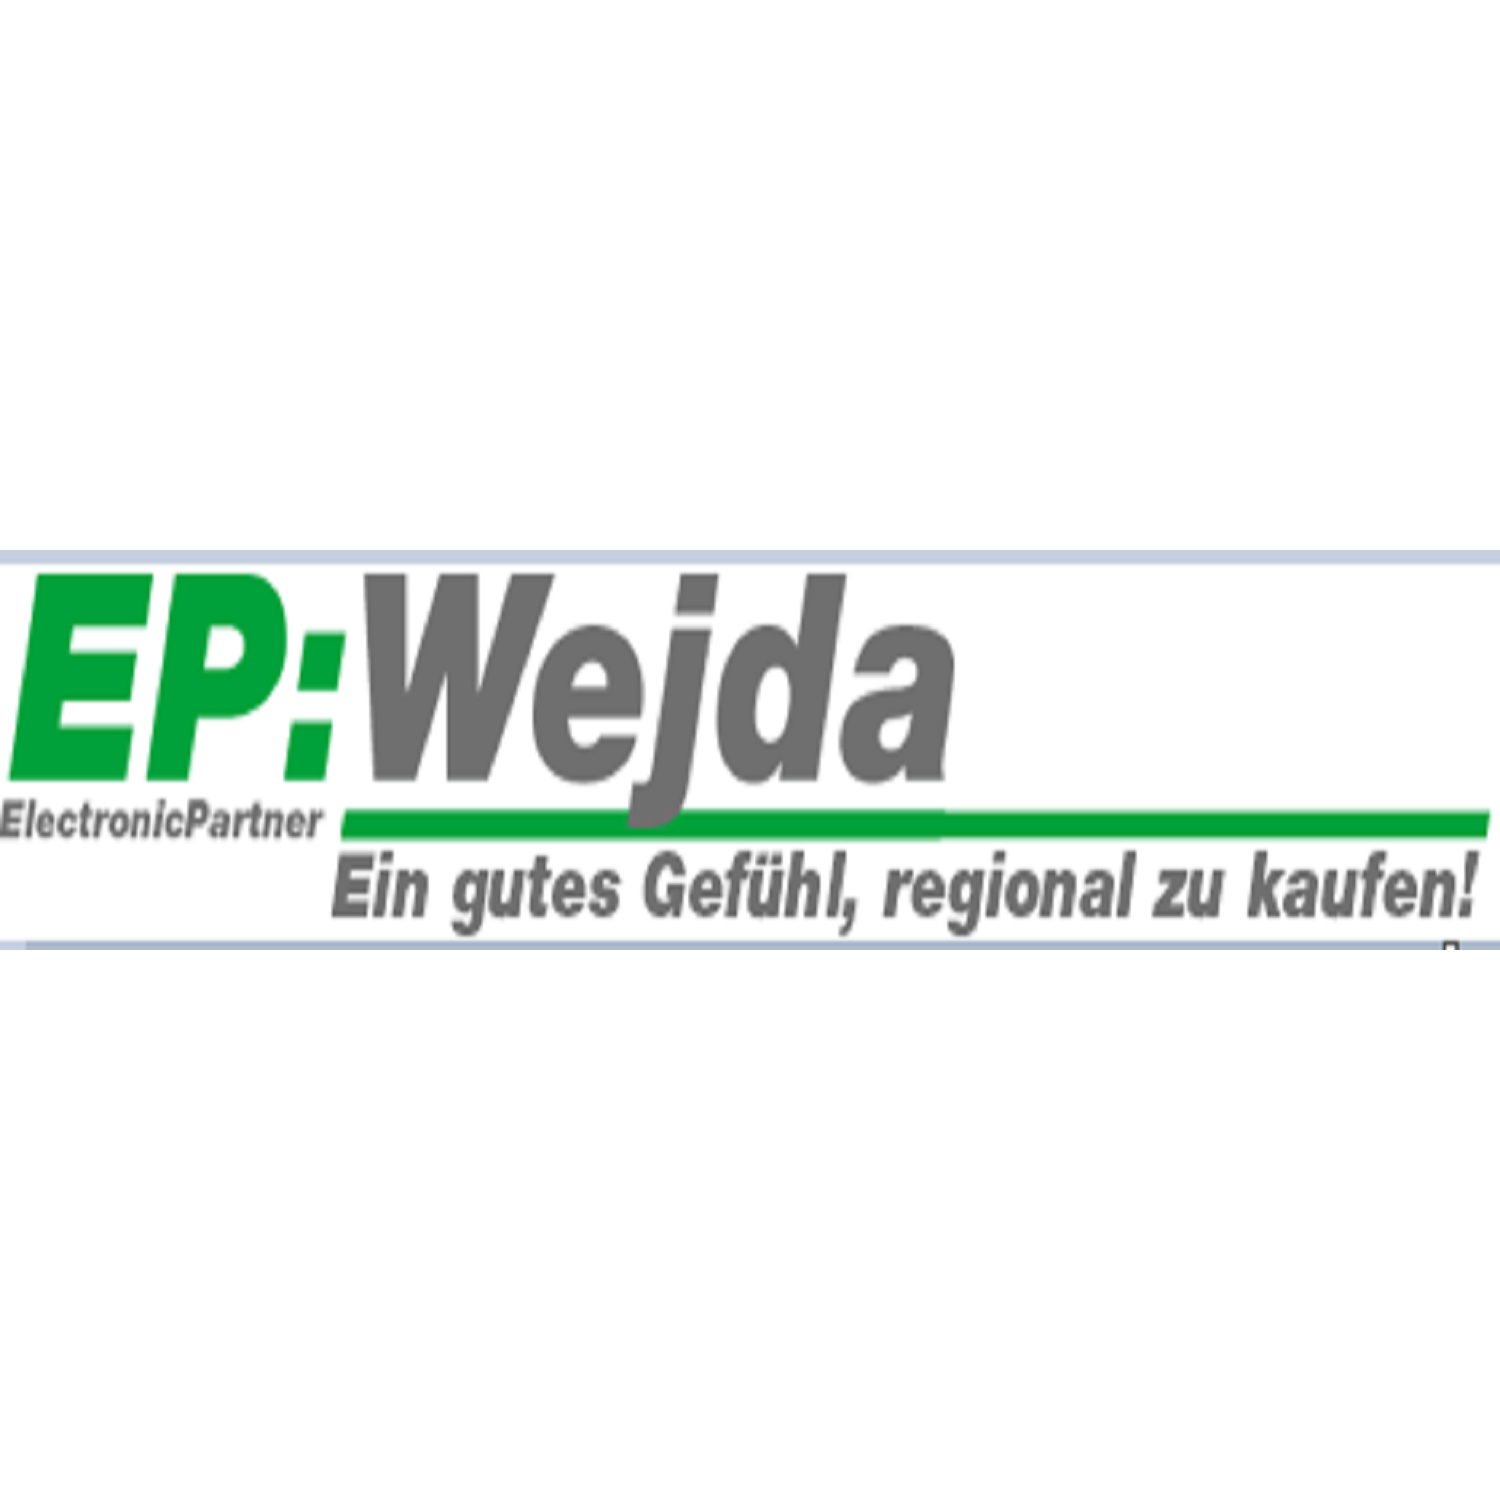 EP:Wejda Logo